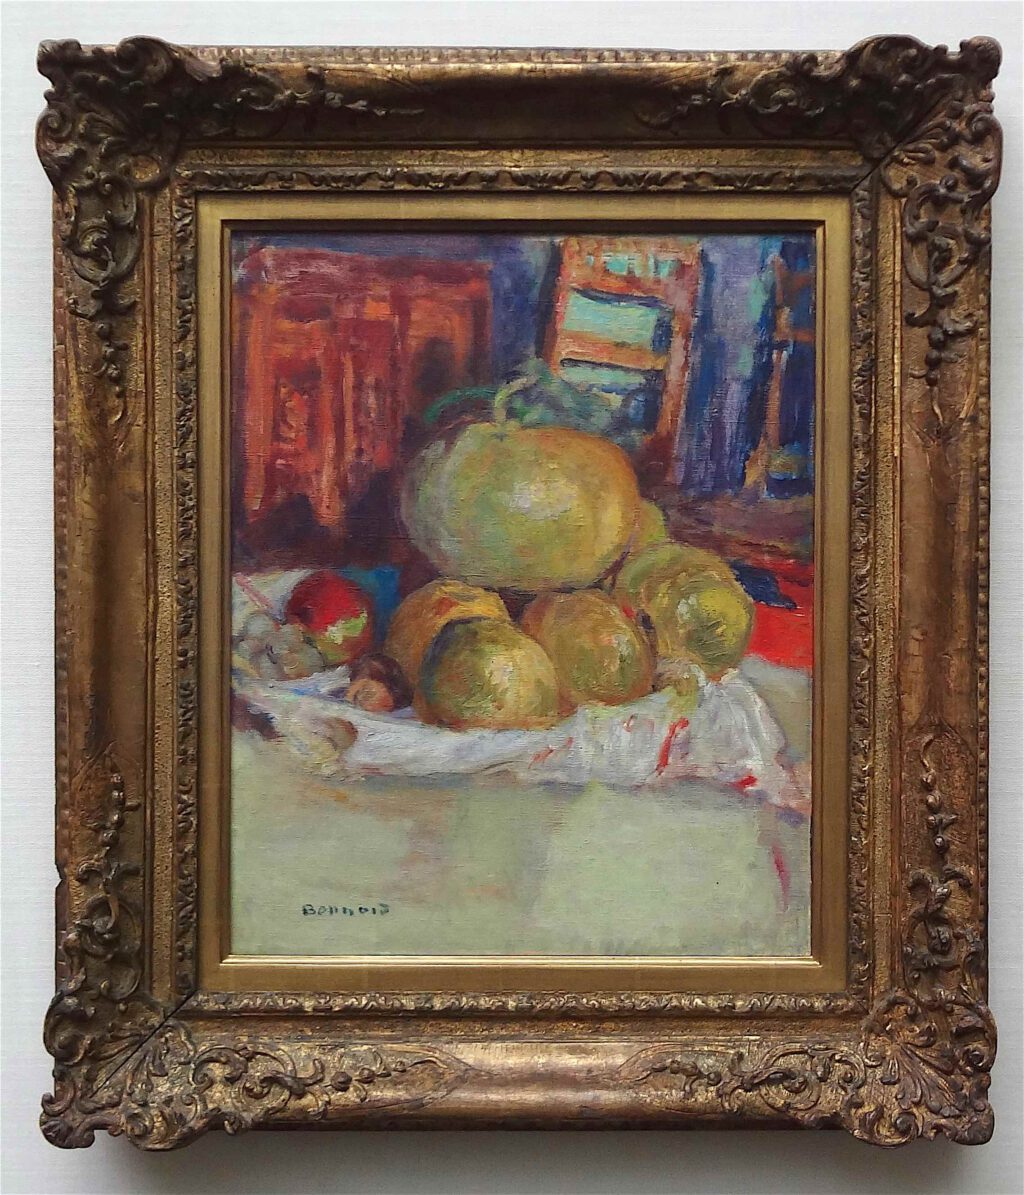 ピエール・ボナール「果物のある静物画」1925年、ウィンタートゥール